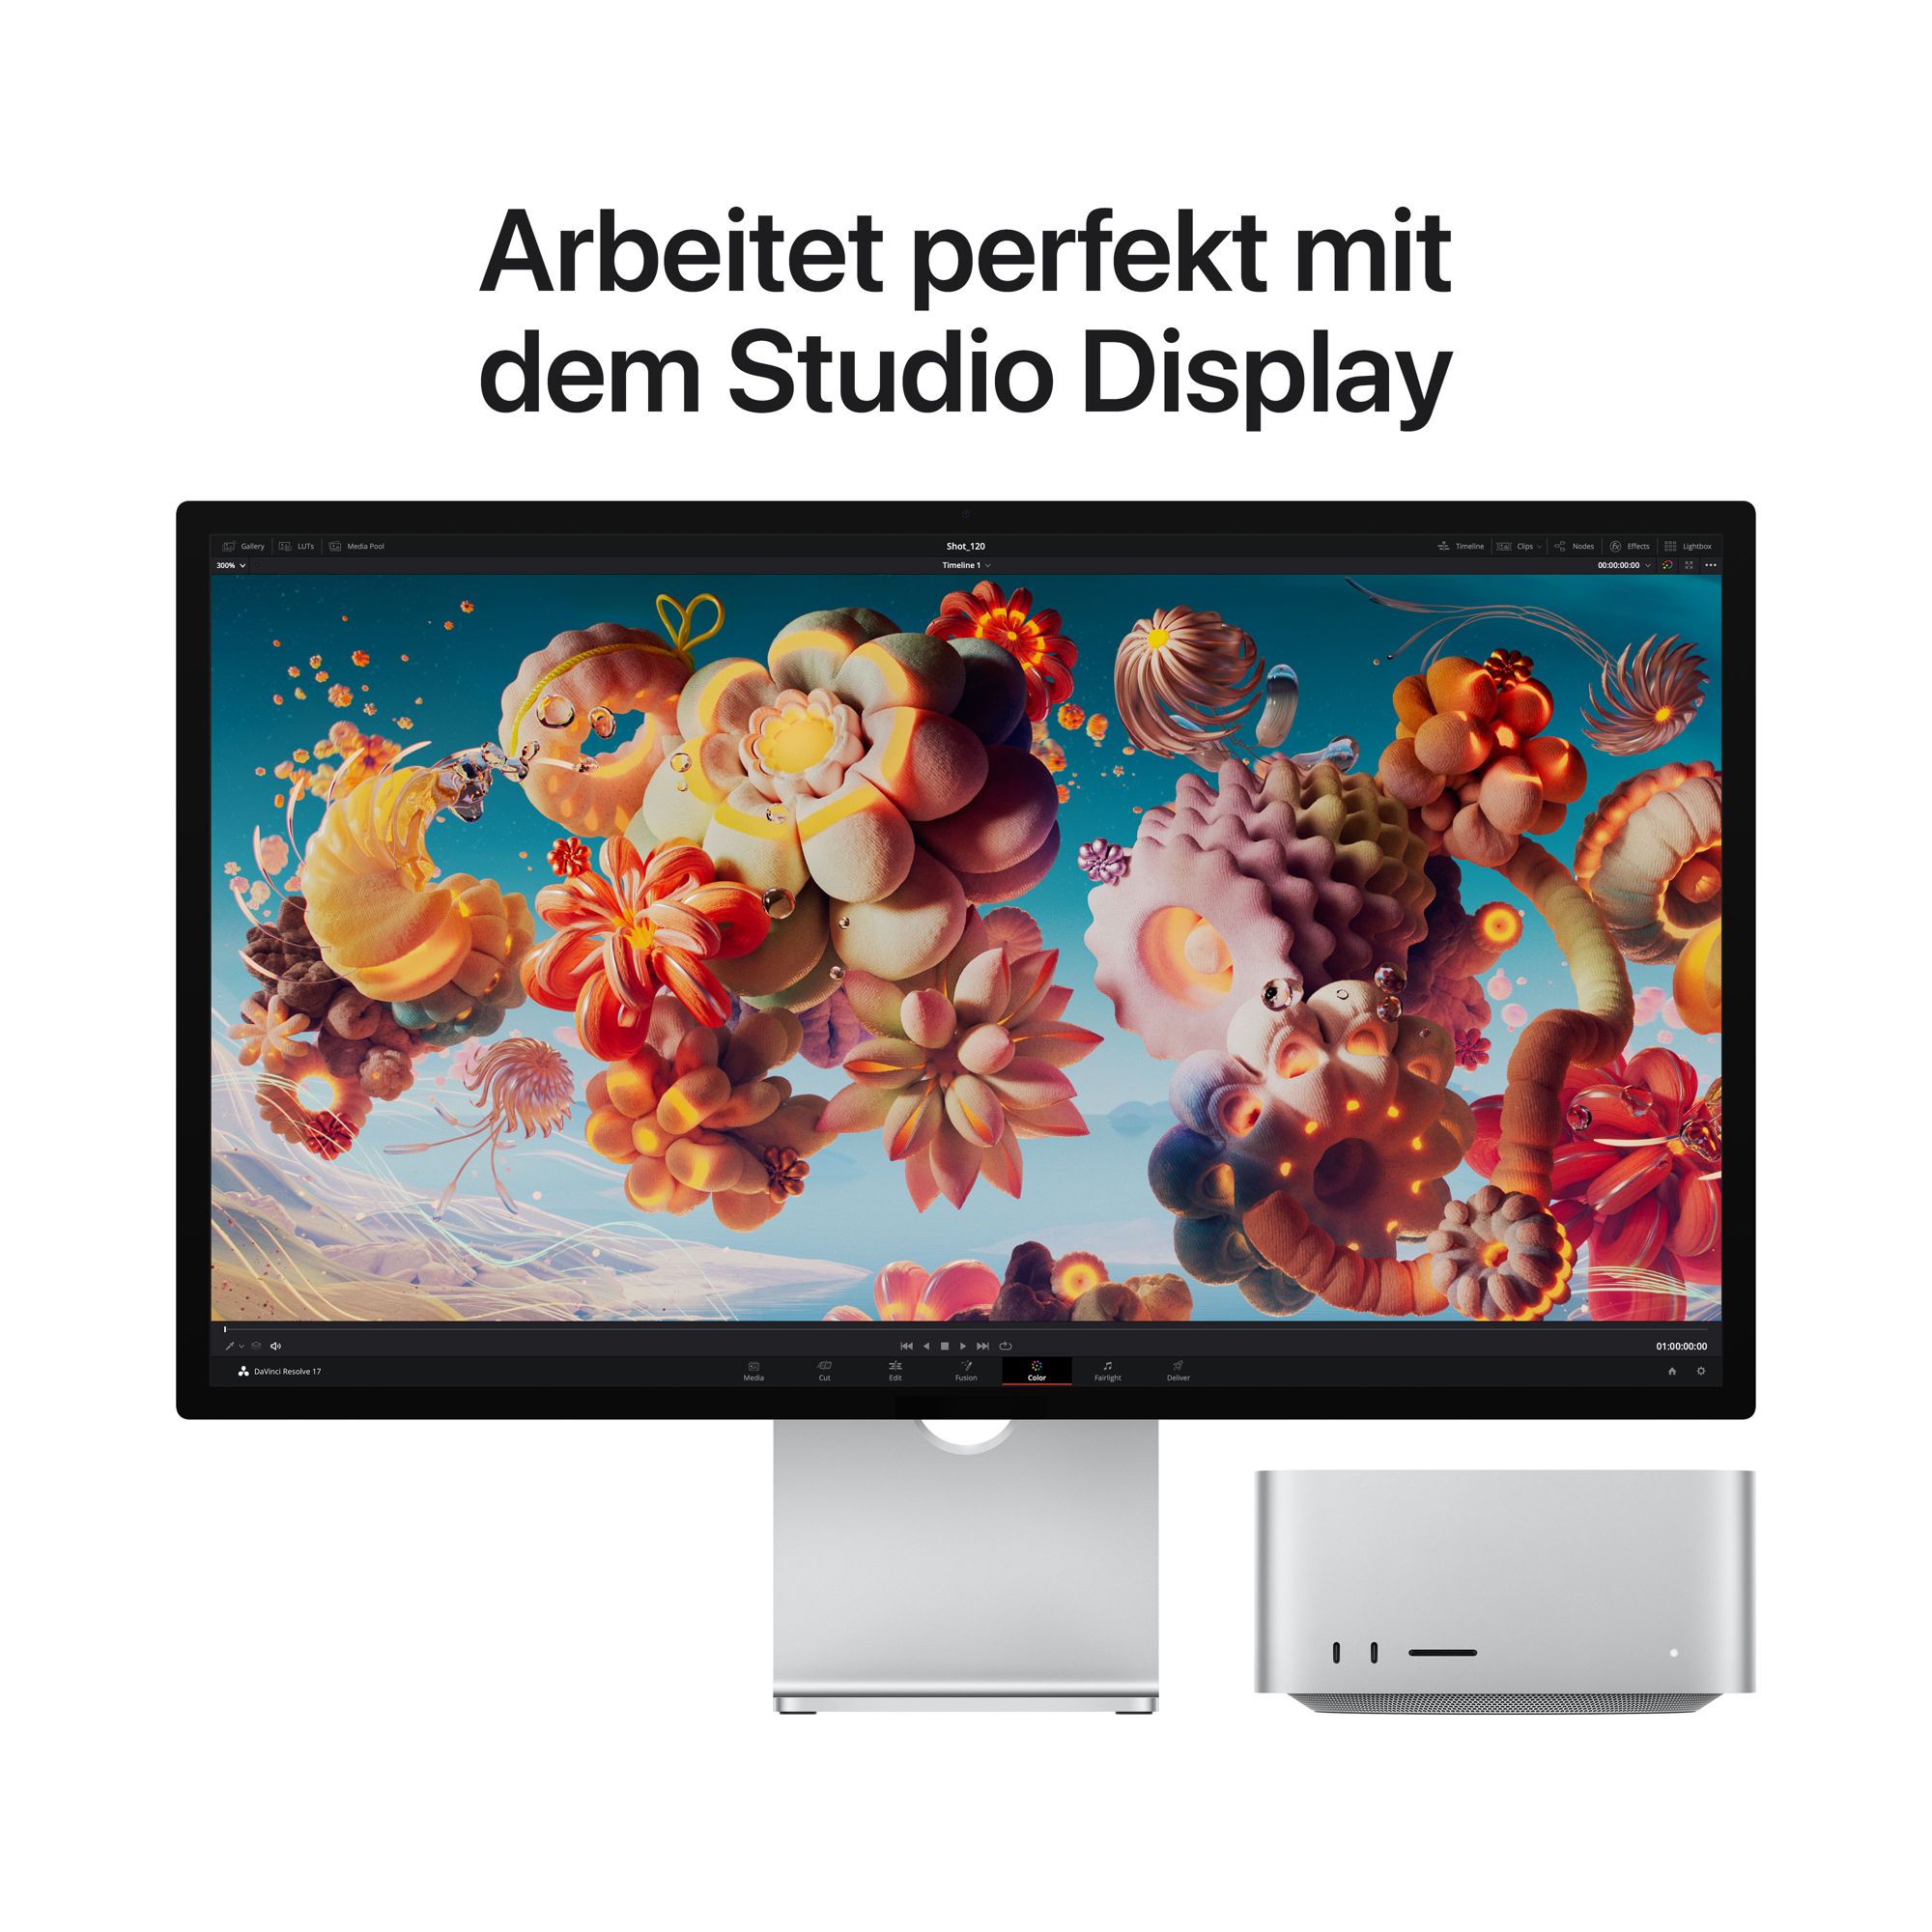 Mac Studio 2022 M1 Max  32GB 1TB